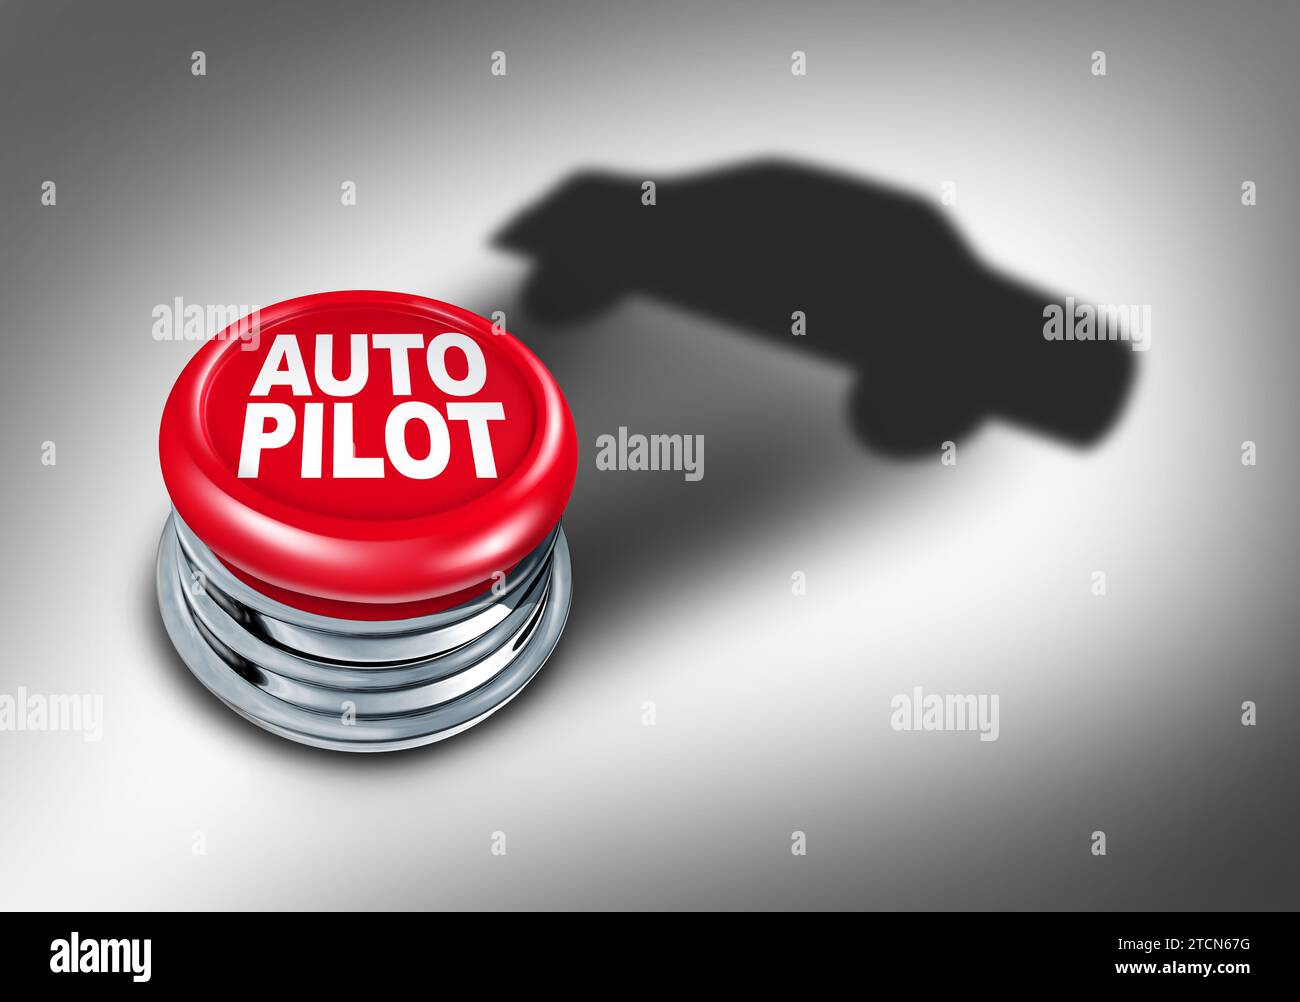 Pilote automatique et Auto Pilot technologie de conduite de voiture sans conducteur et IA auto-conduite en tant que transport technologique de véhicule autonome comme questions de sécurité et de risque Banque D'Images